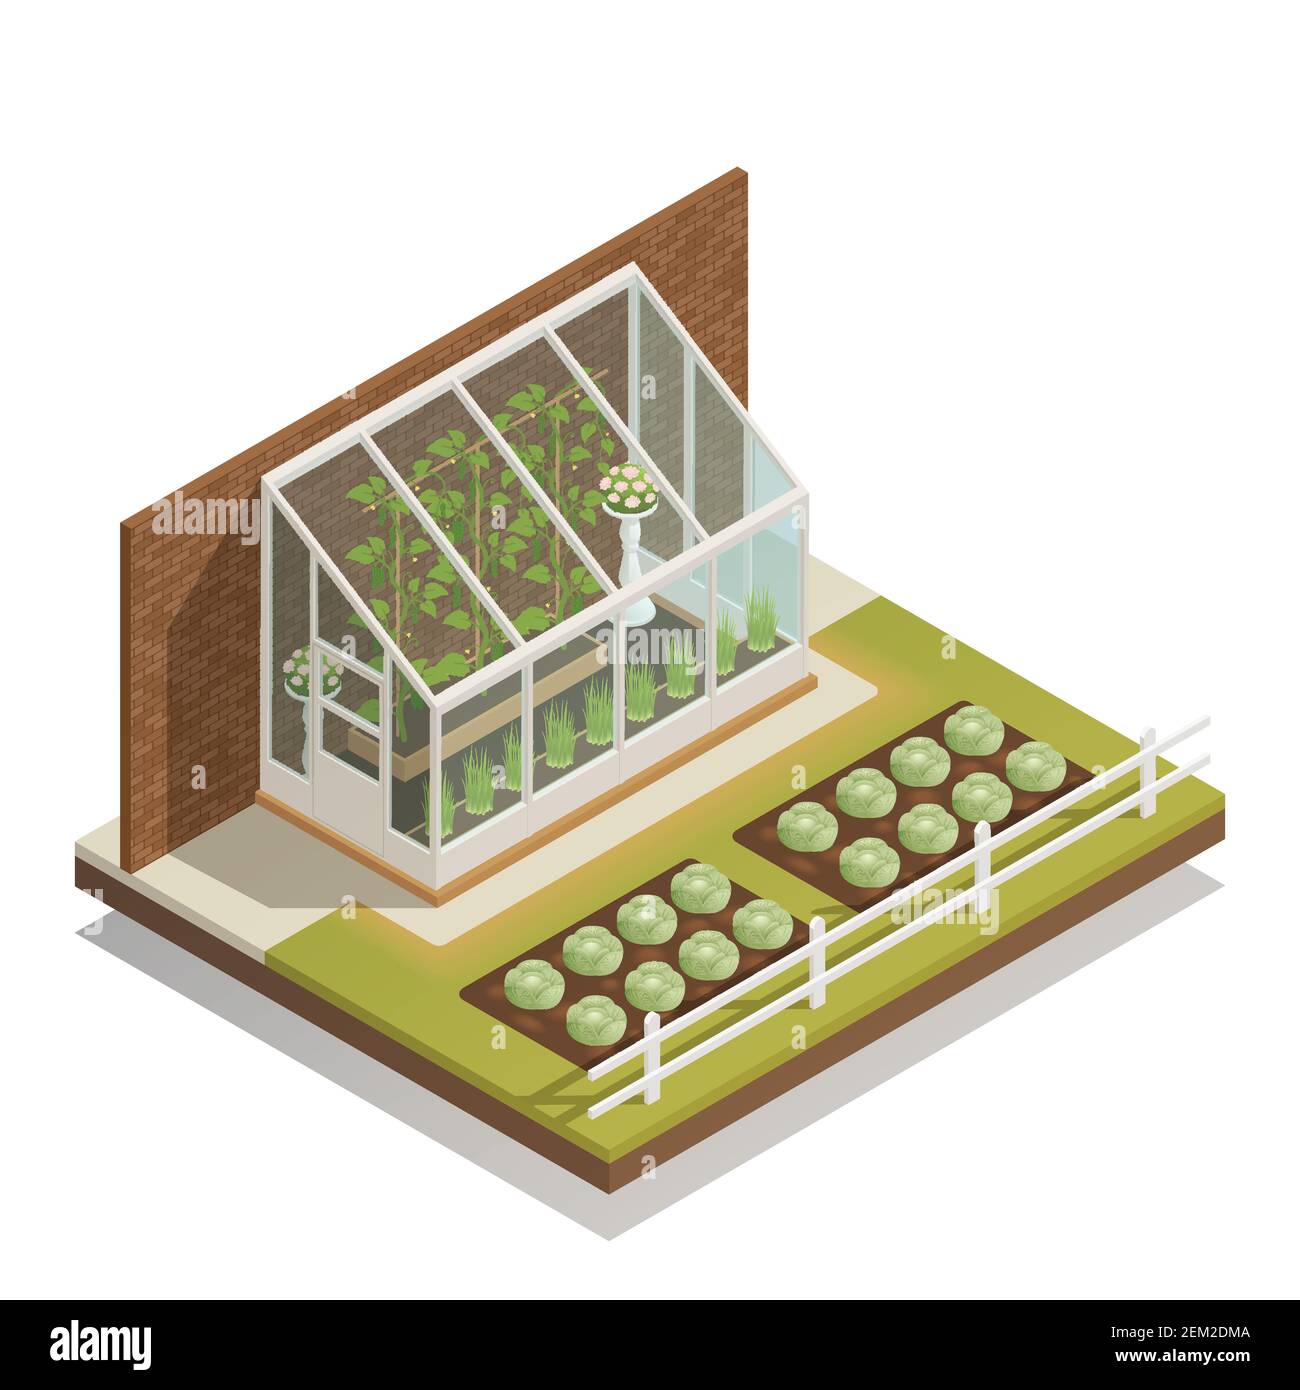 Serre traditionnelle maigre à verre avec jeunes plantes composition isométrique de illustration vectorielle de verdure et de jardinage d'extérieur Illustration de Vecteur